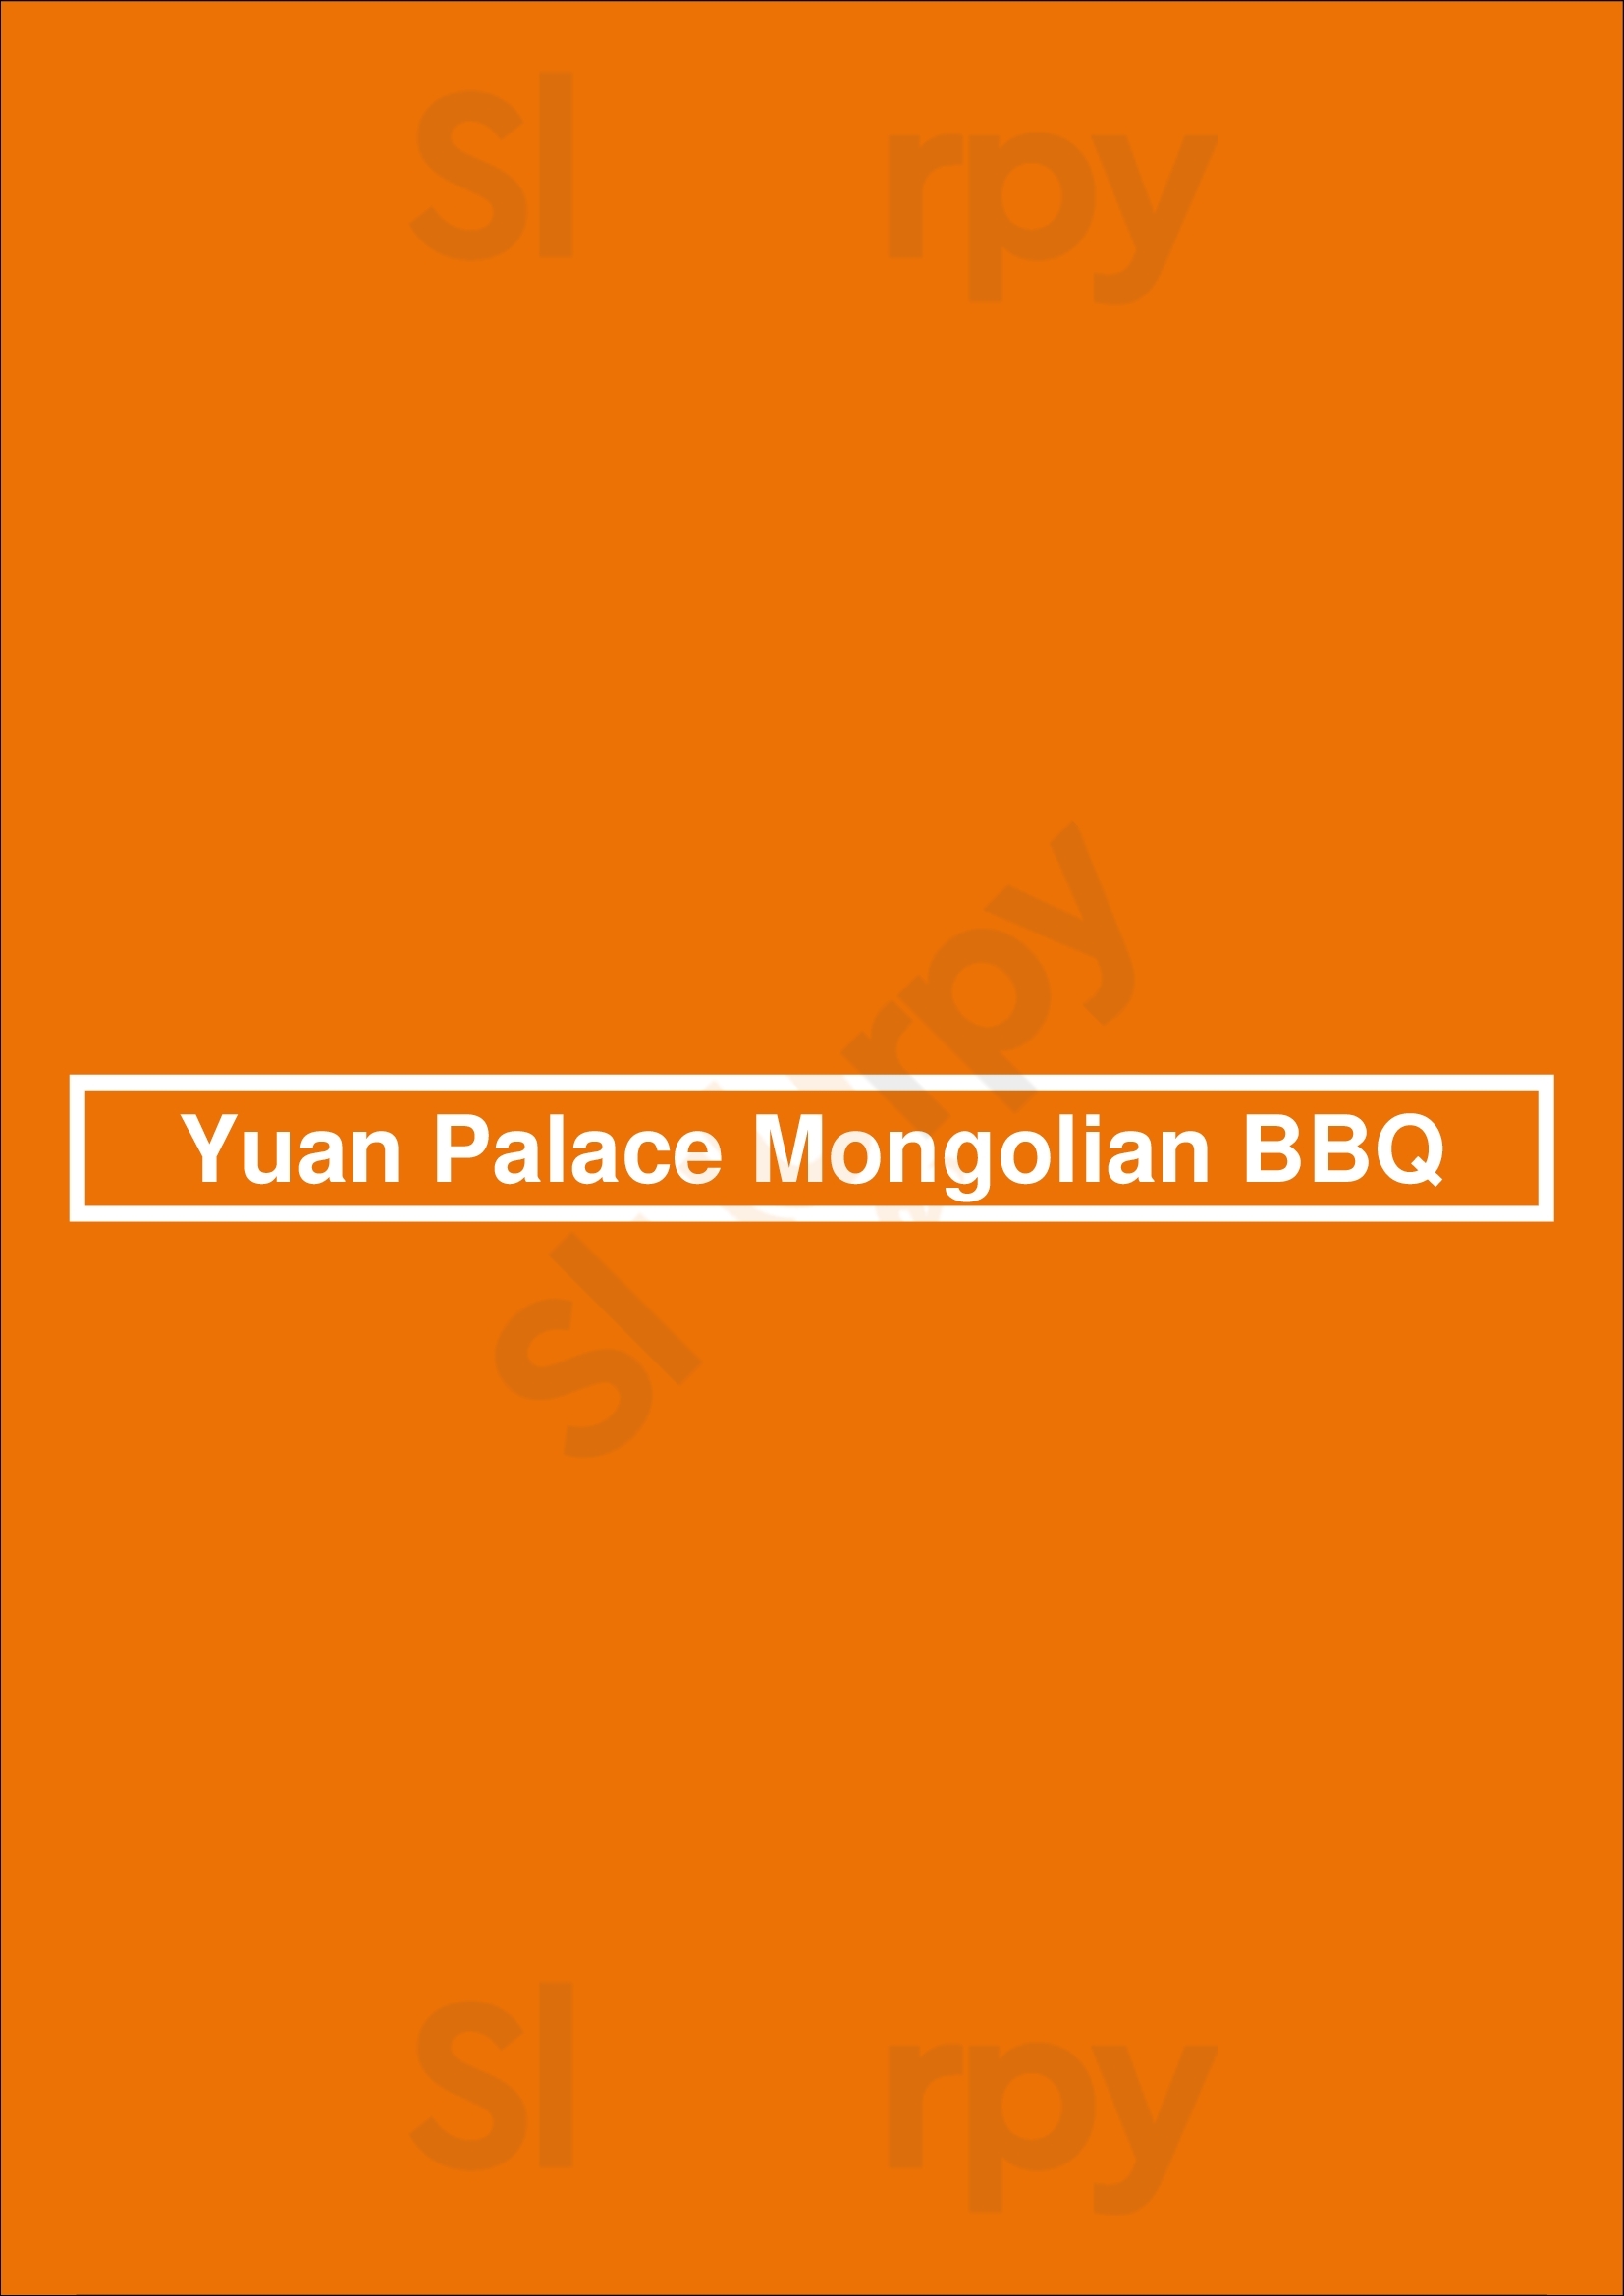 Yuan Palace Mongolian Bbq Centennial Menu - 1